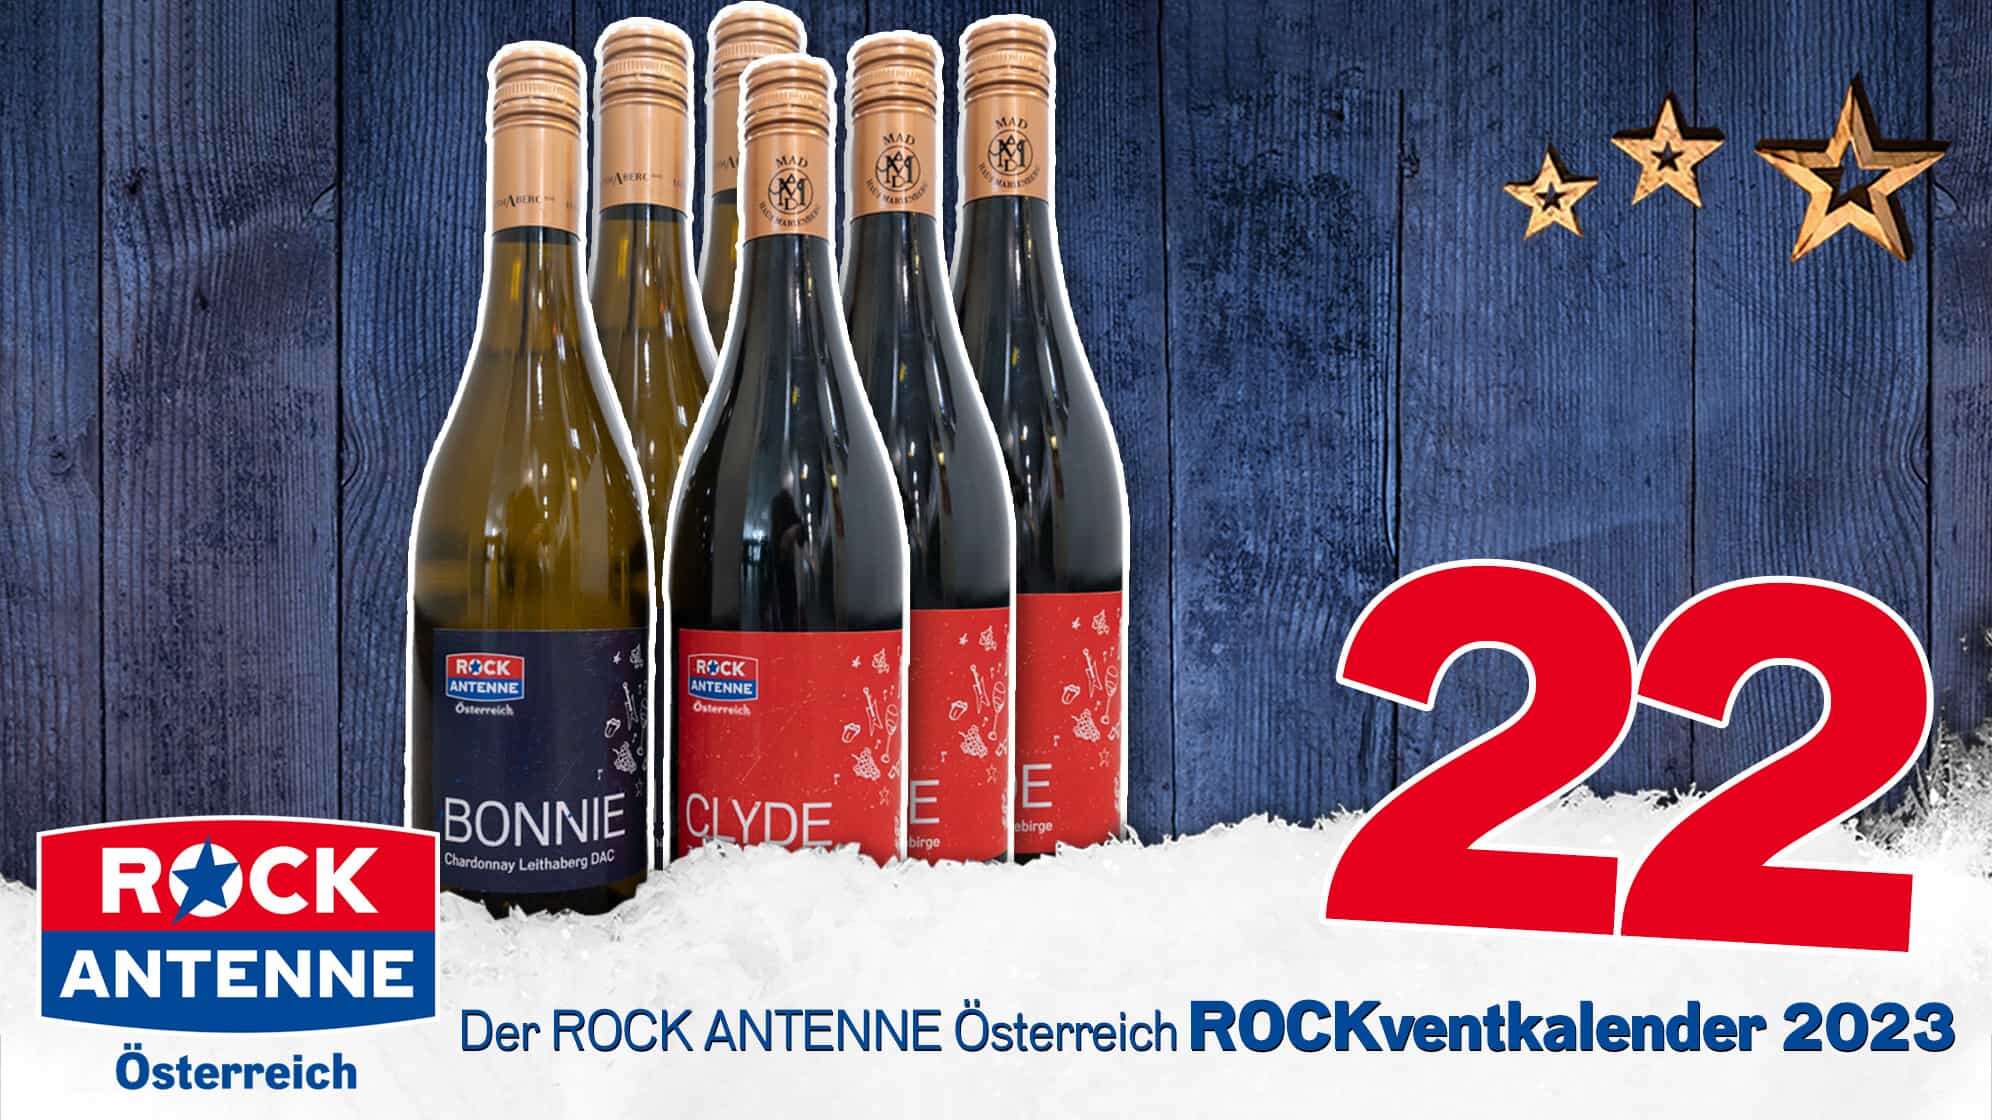 ROCK ANTENNE Österreich ROCKventkalender Türchen 22: Eine Kiste ROCK ANTENNE Österreich Wein